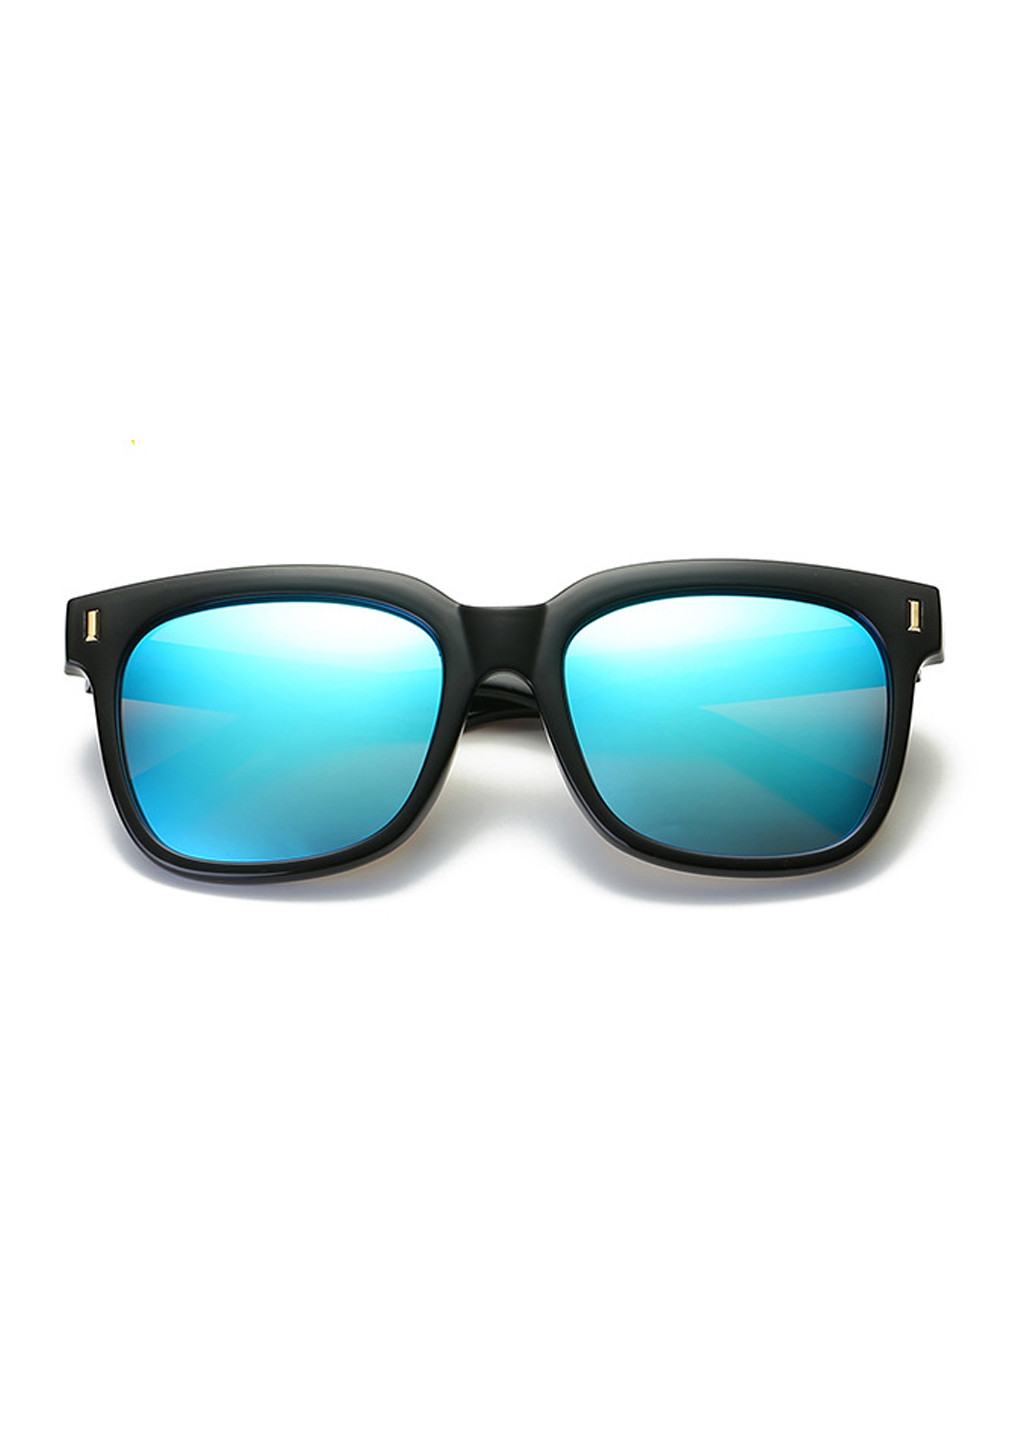 Солнцезащитные очки Dubery голубые